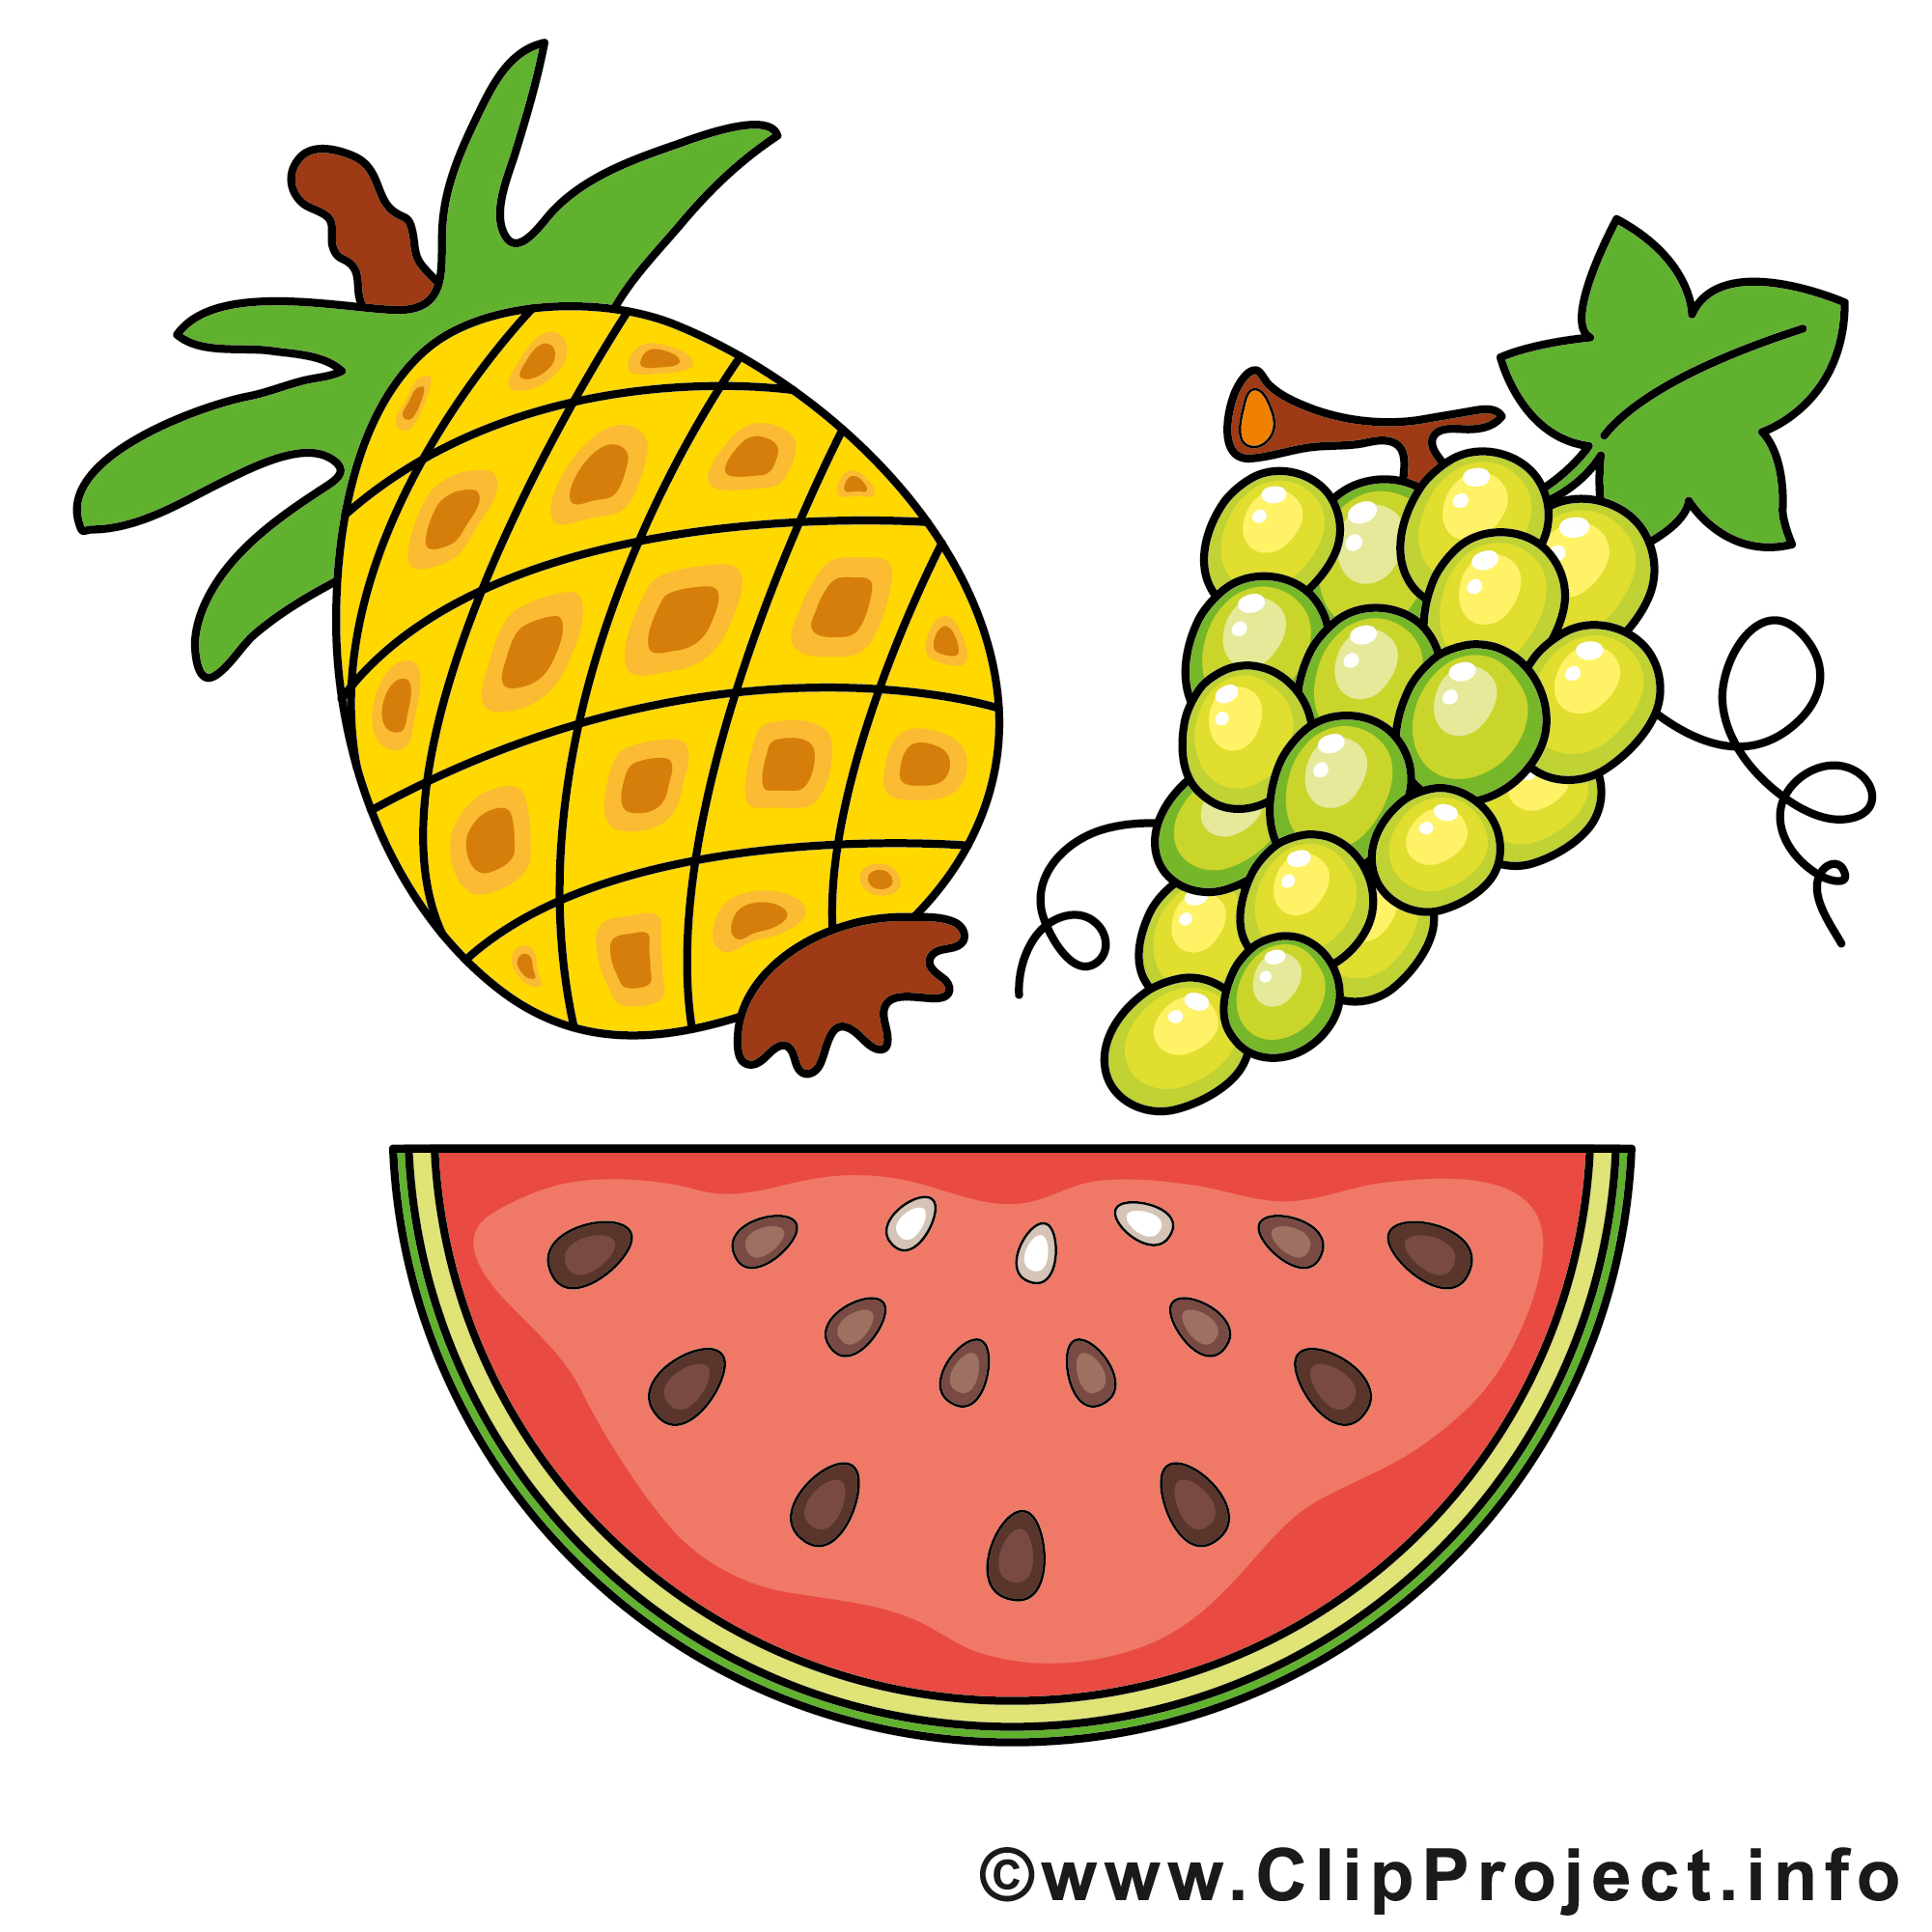 image clipart gratuit fruits - photo #49